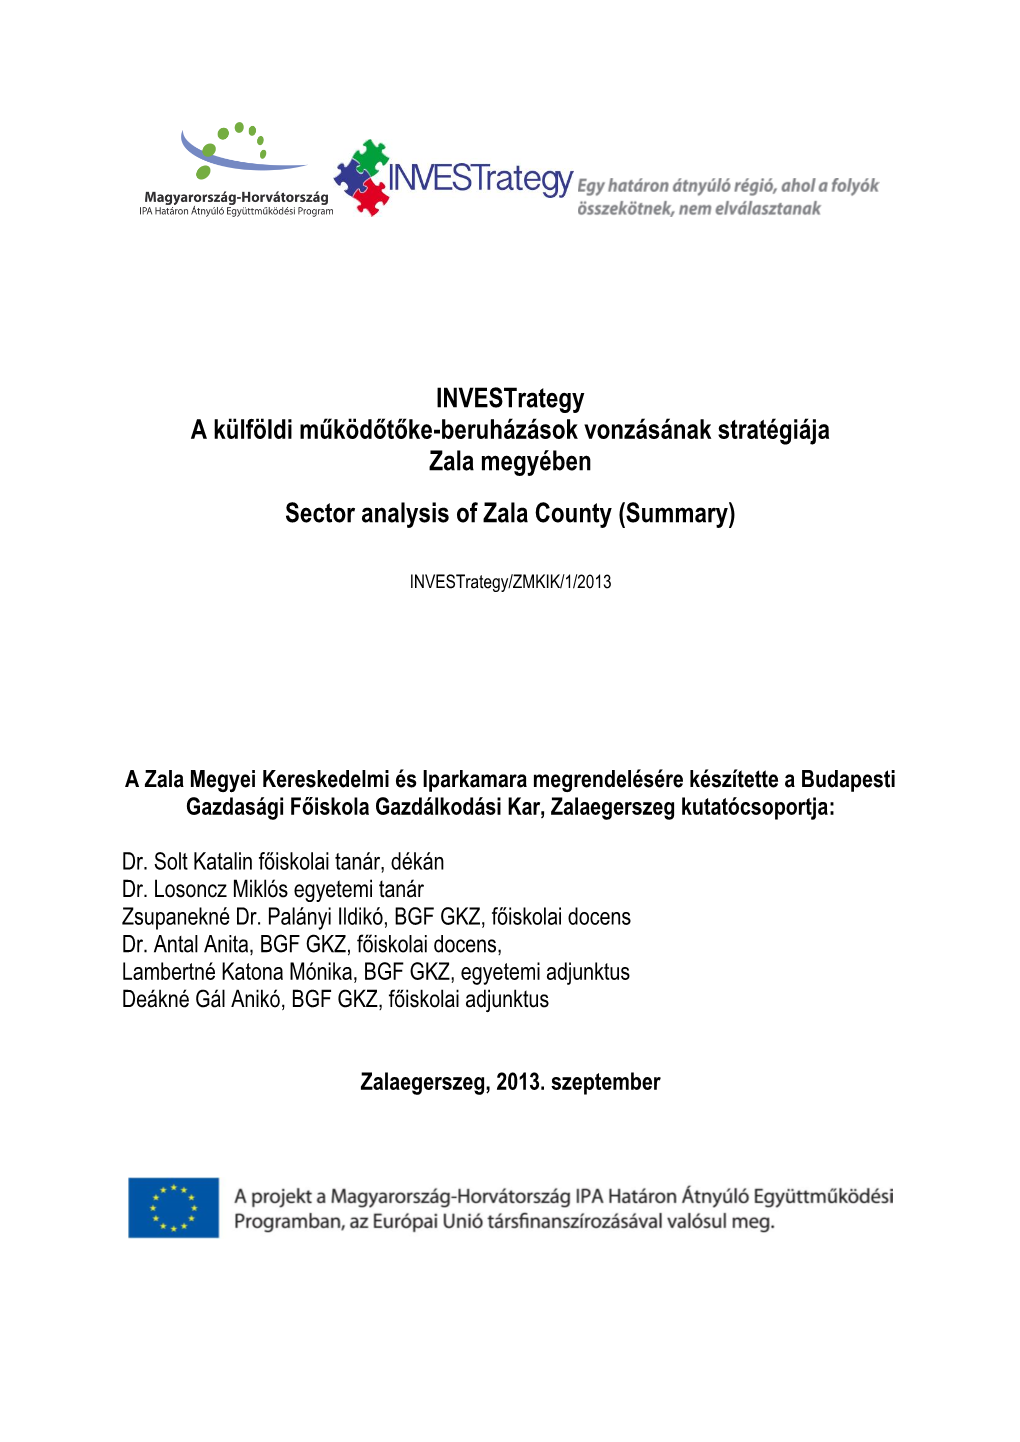 Investrategy a Külföldi Működőtőke-Beruházások Vonzásának Stratégiája Zala Megyében Sector Analysis of Zala County (Summary)